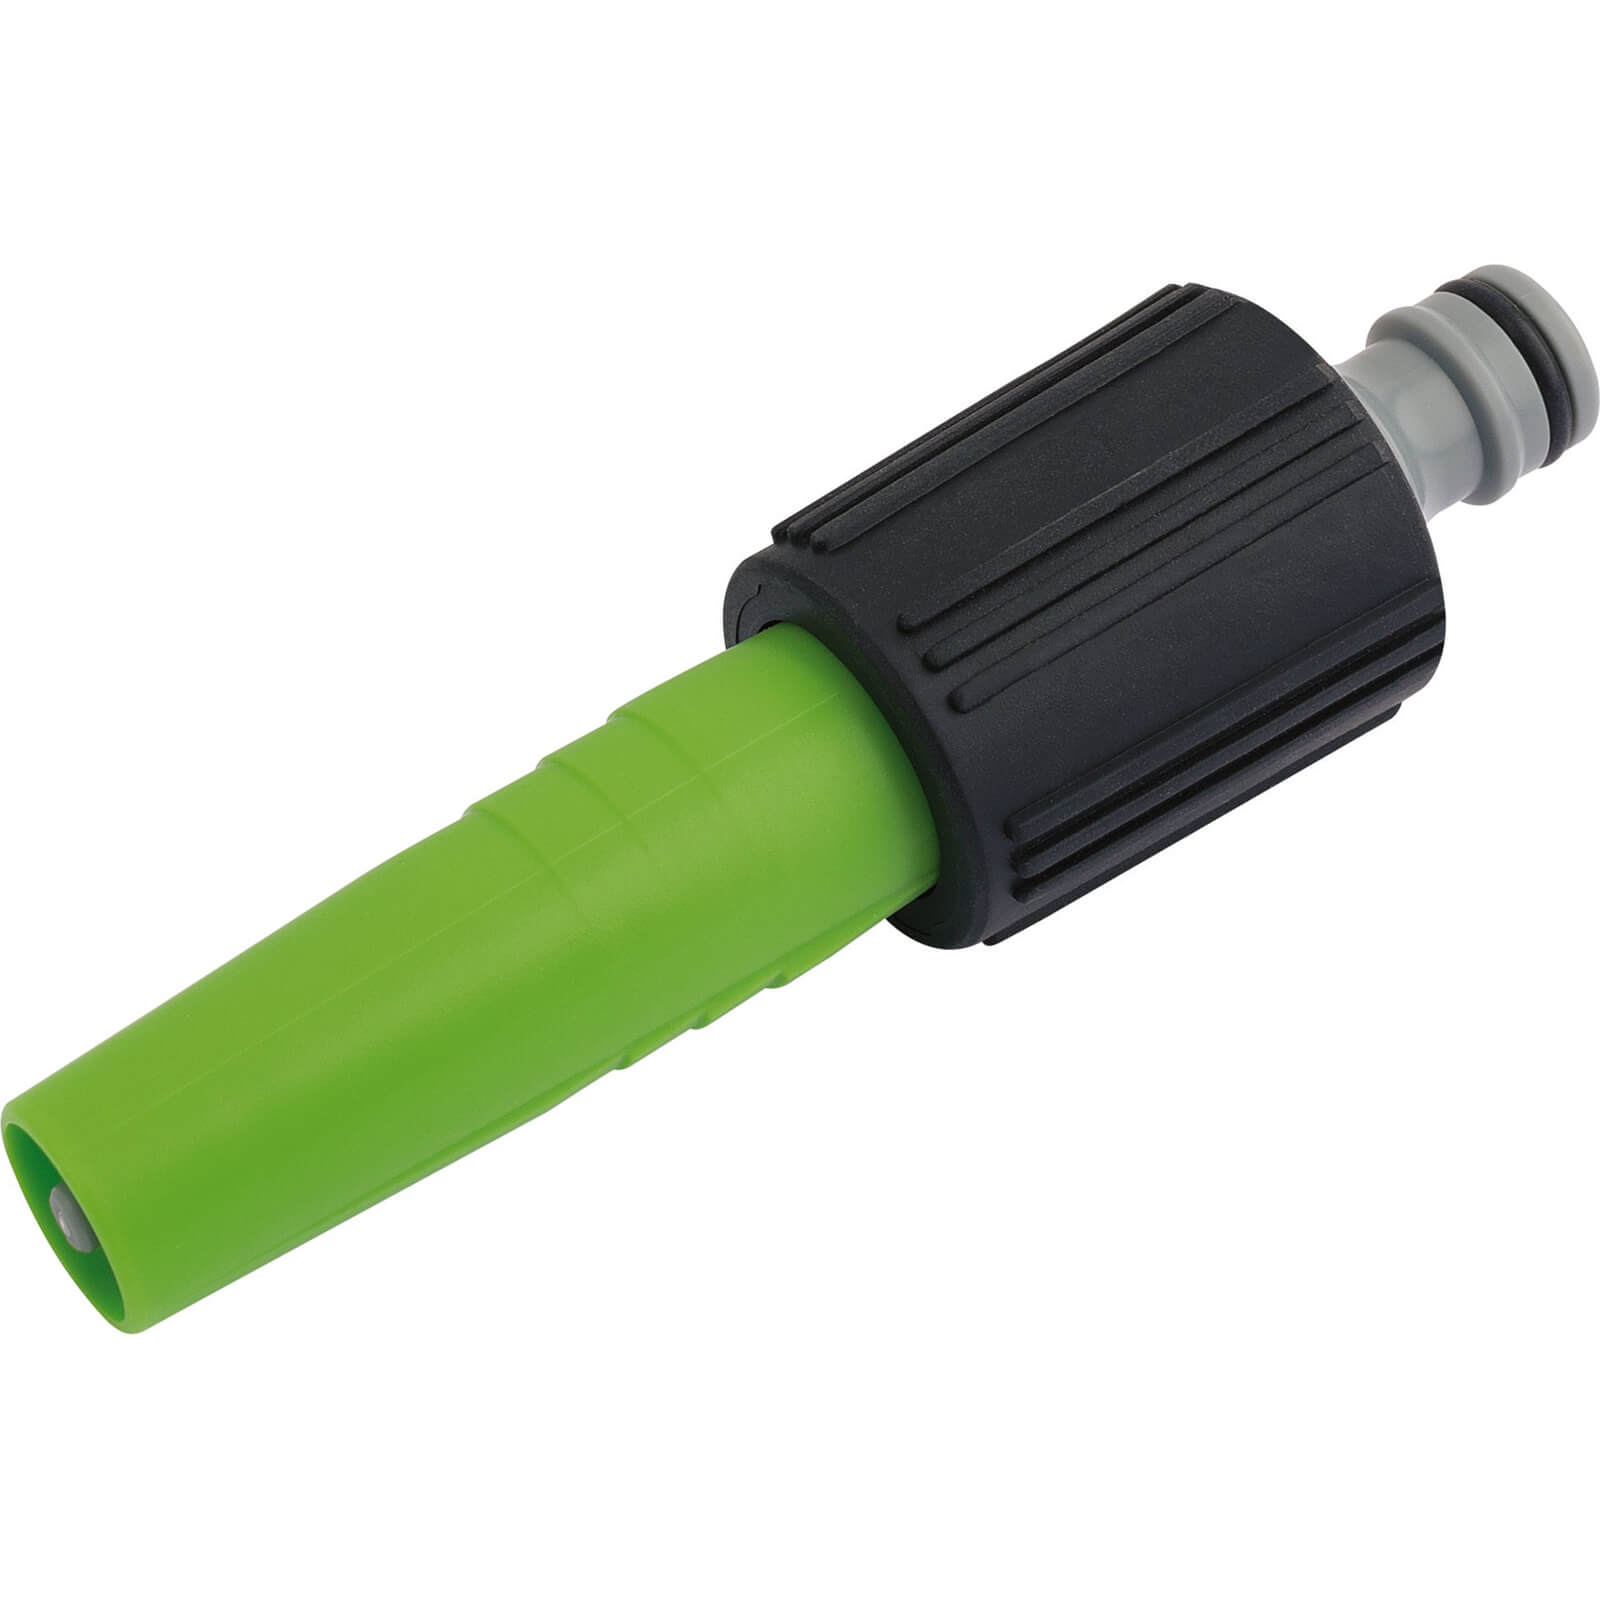 Image of Draper Soft Grip Adjustable Garden Watering Spray Nozzle